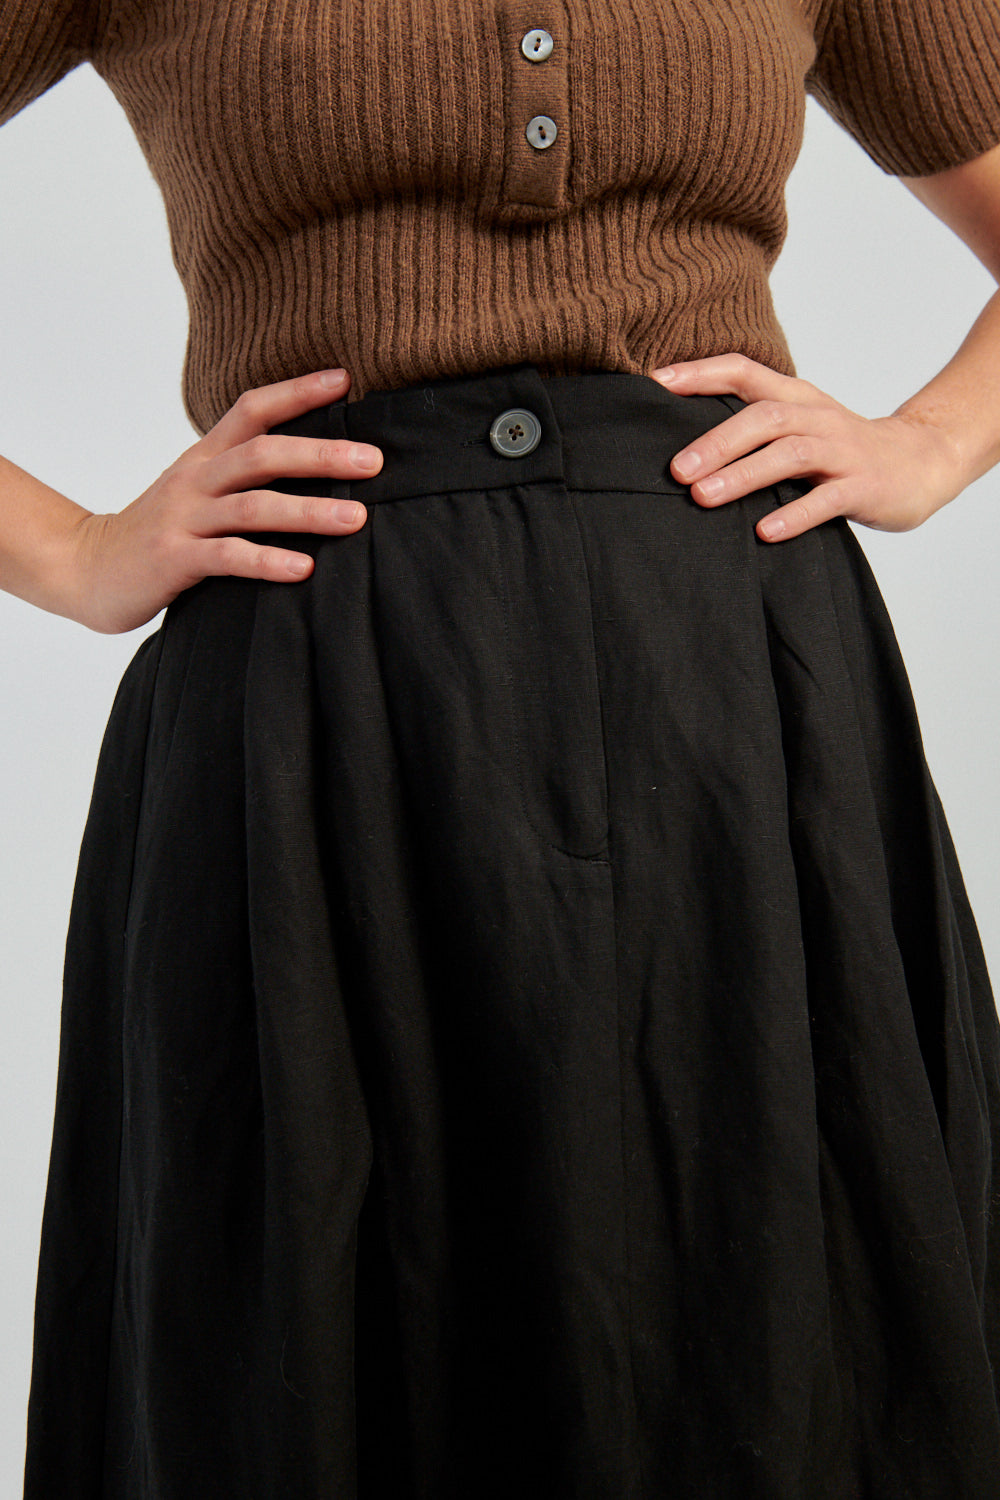 Mara Hoffman Tulay Skirt black-Mara Hoffman long black skirt-Idun-St. Paul